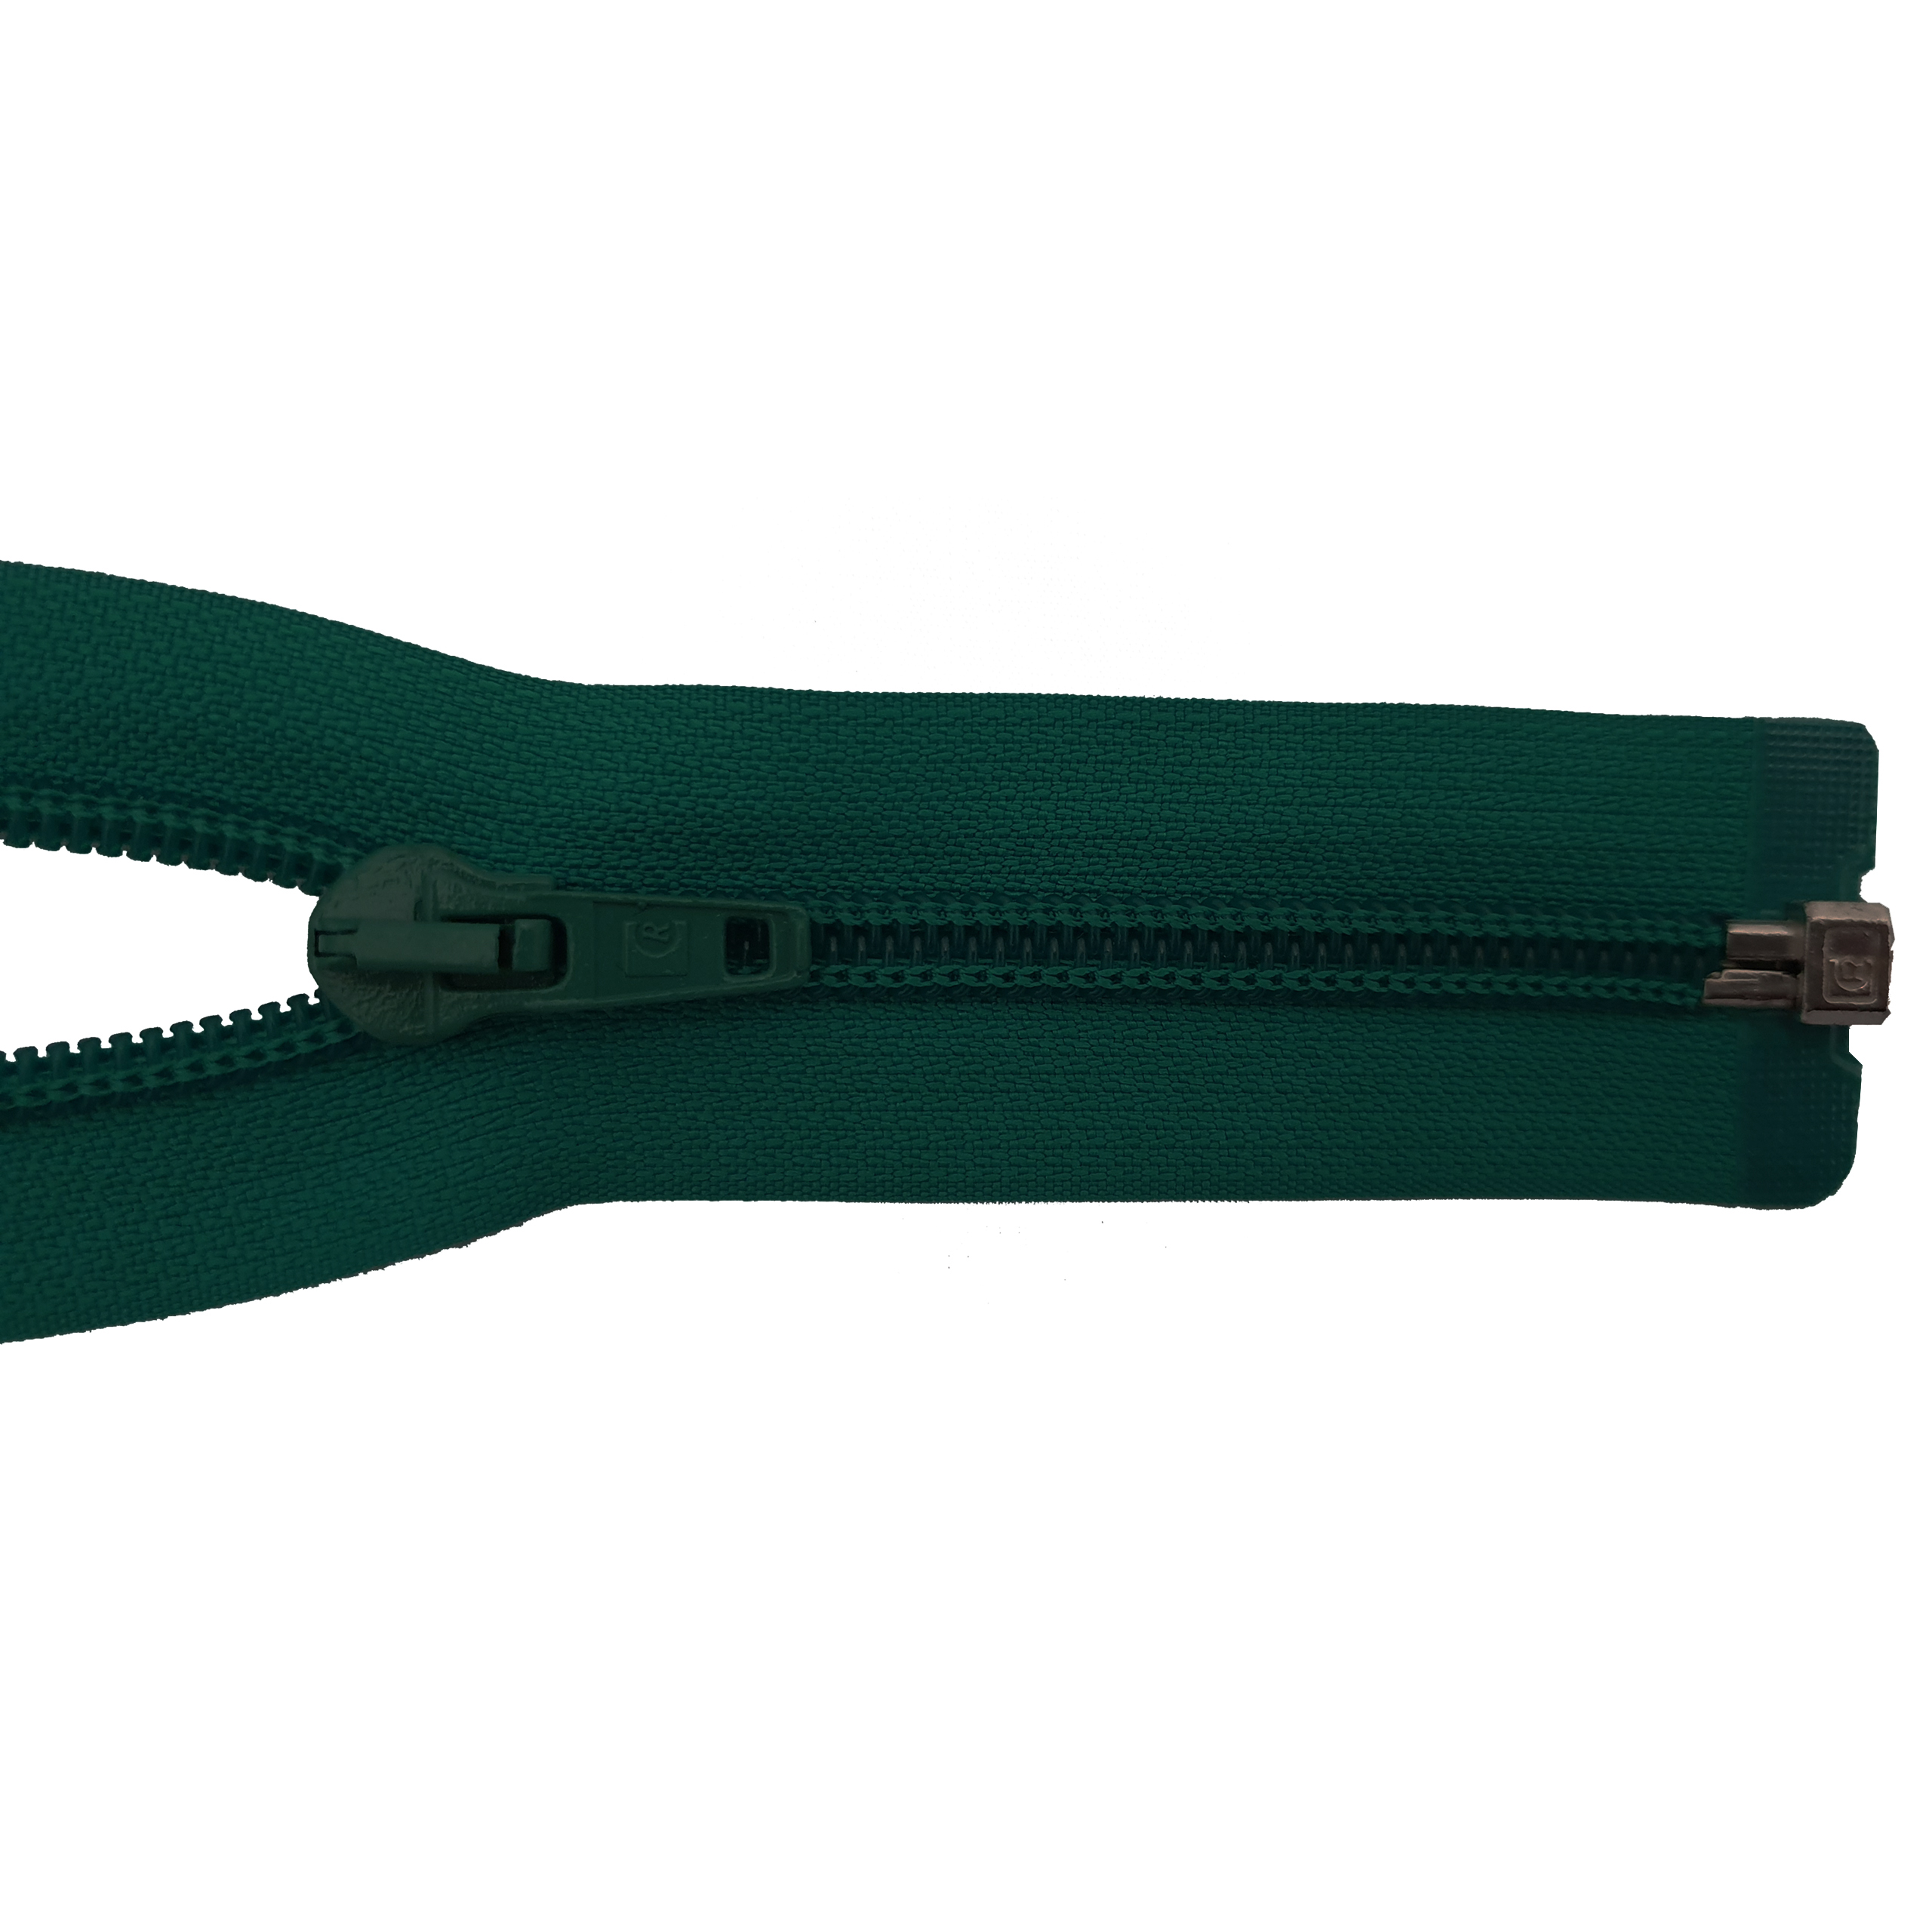 Reißverschluss, teilbar, Spirale breit, dunkelgrün, hochwertiger Marken-Reißverschluss von Rubi/Barcelona